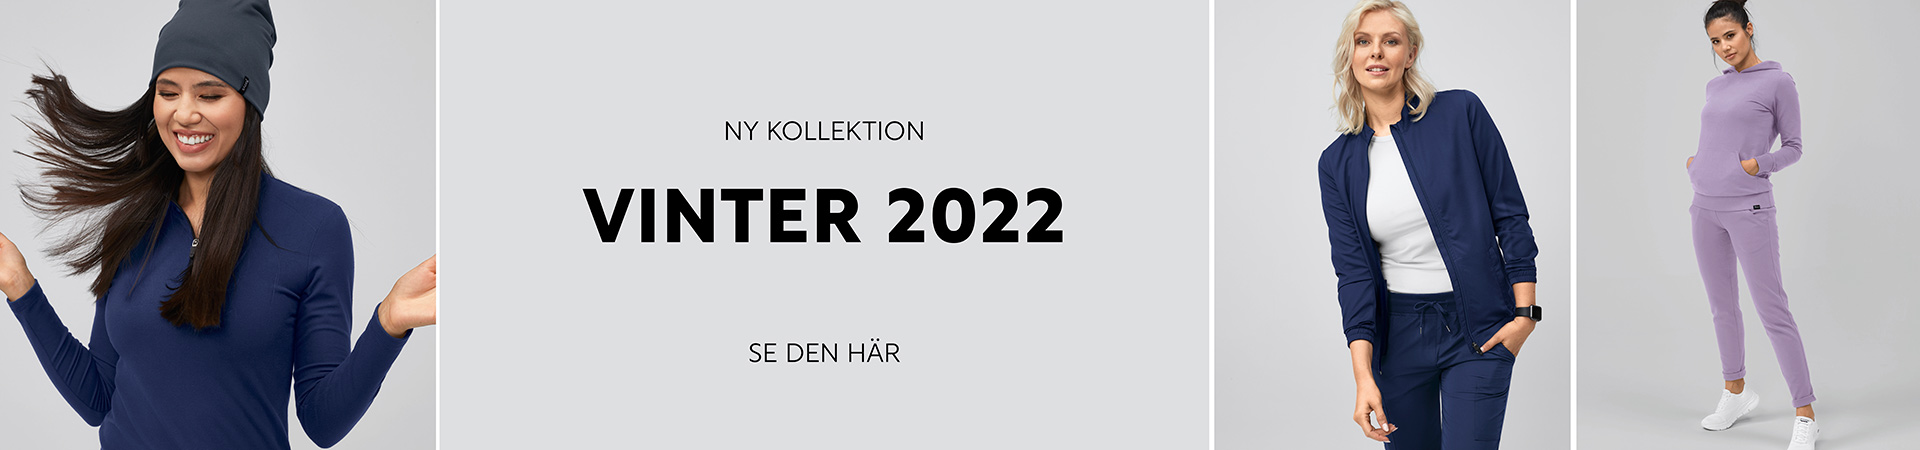 Vinter 2022